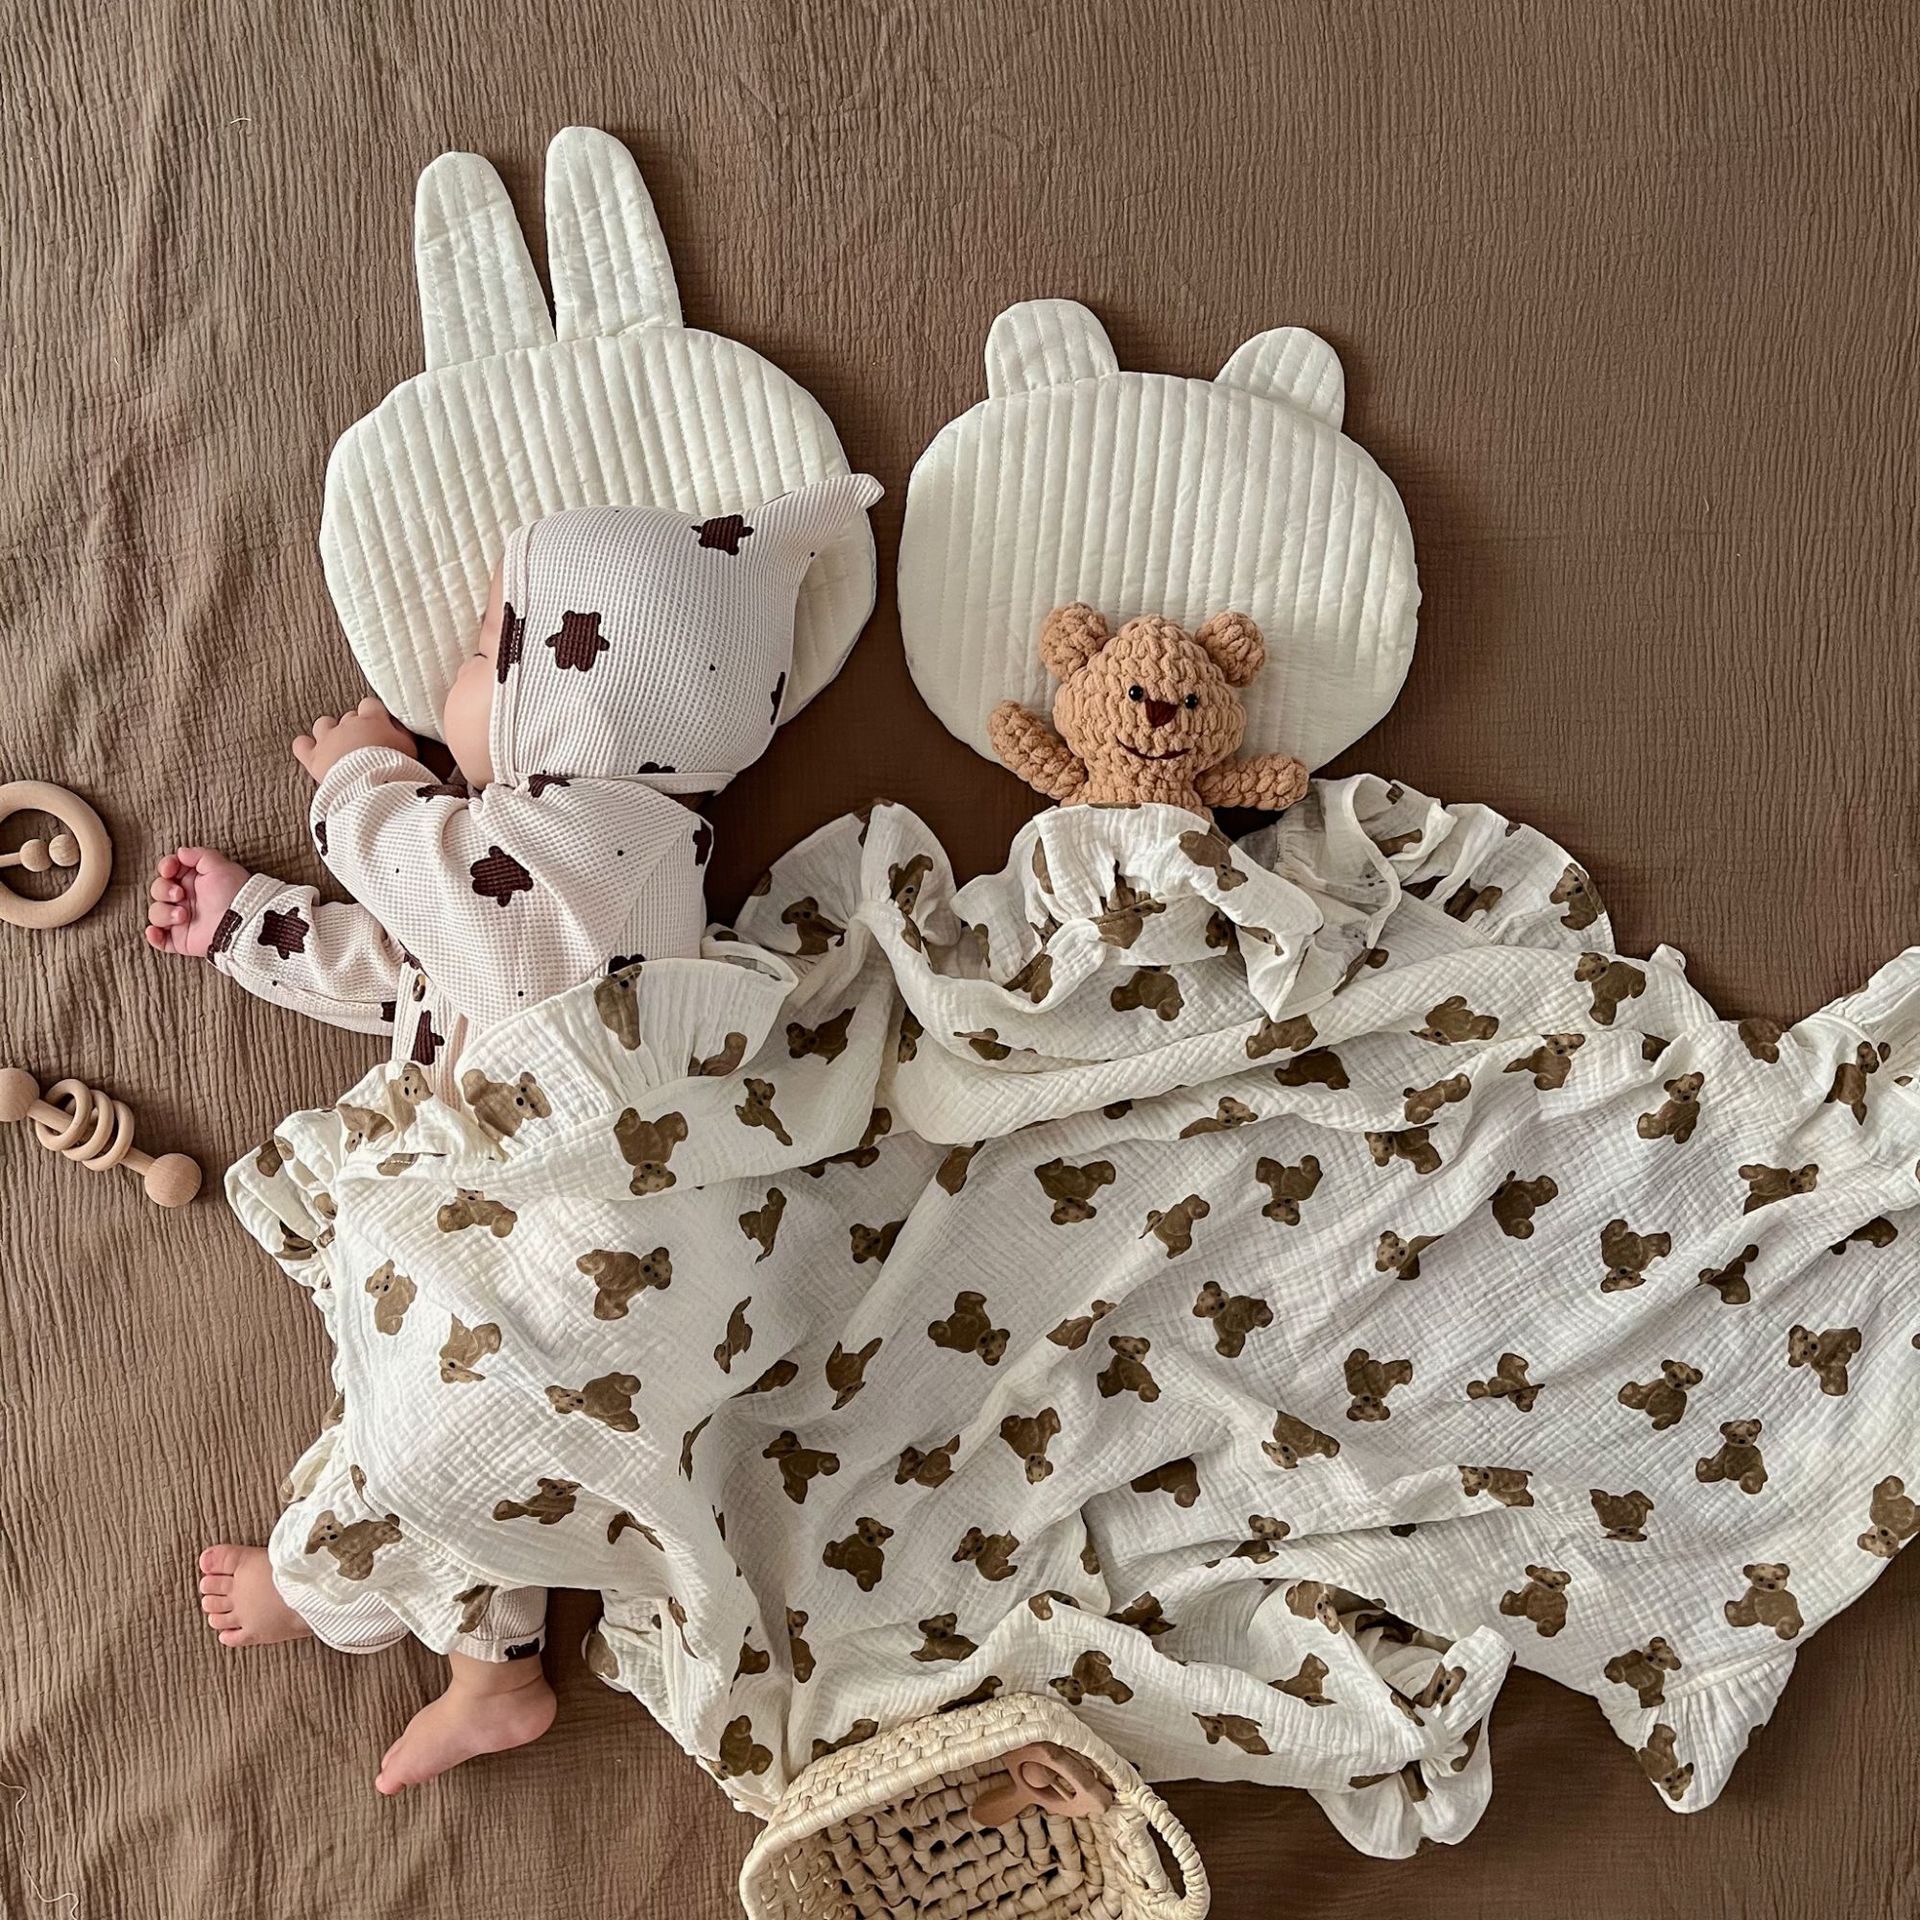 歐式卡通小熊棉紗蓋毯 溫暖舒適 沙發臥室兒童房